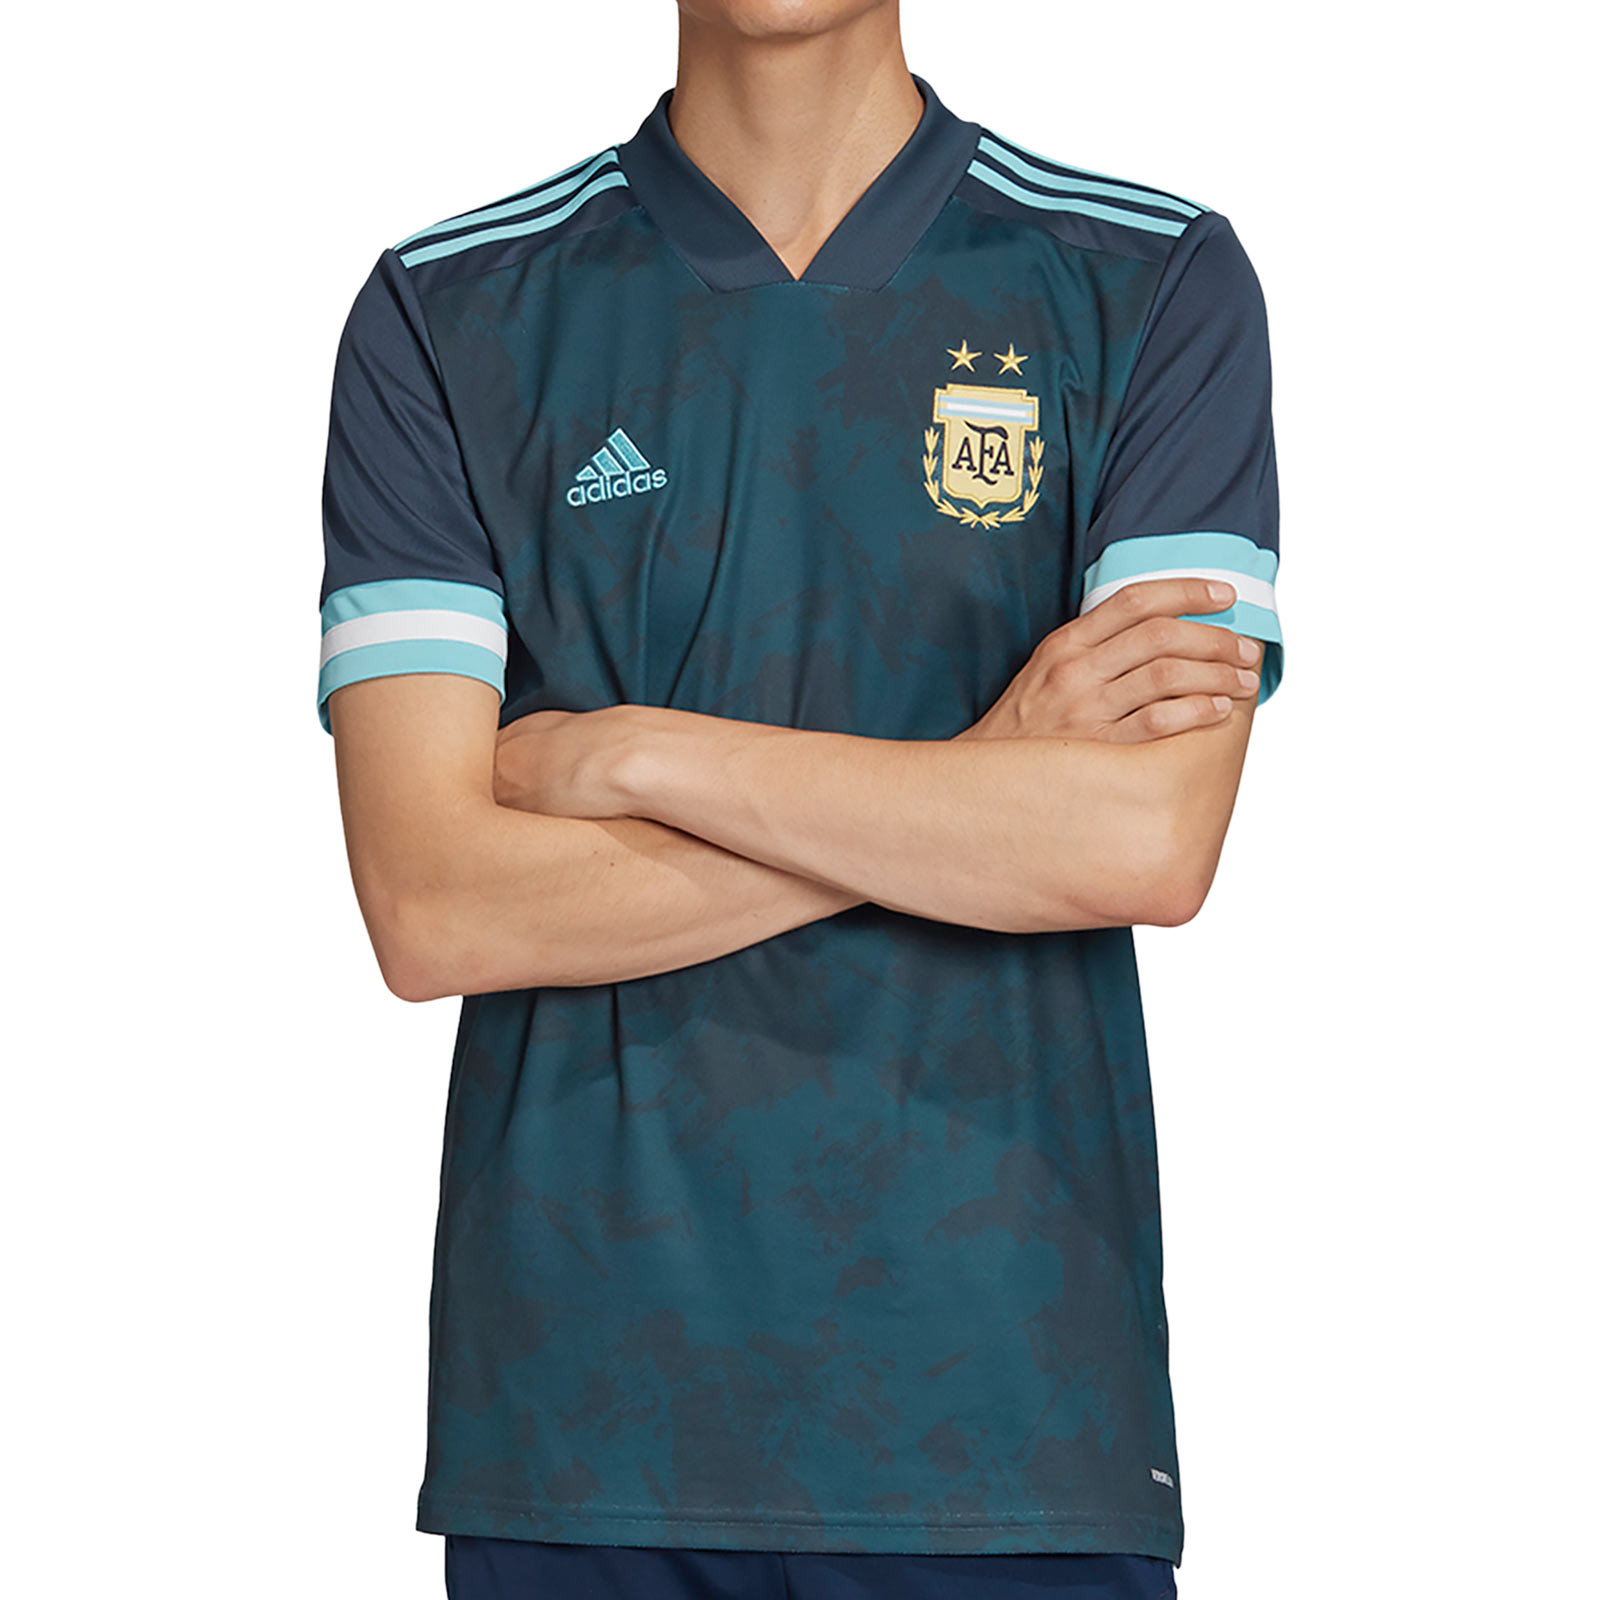 Camiseta adidas 2a Argentina 2020 2021 futbolmania